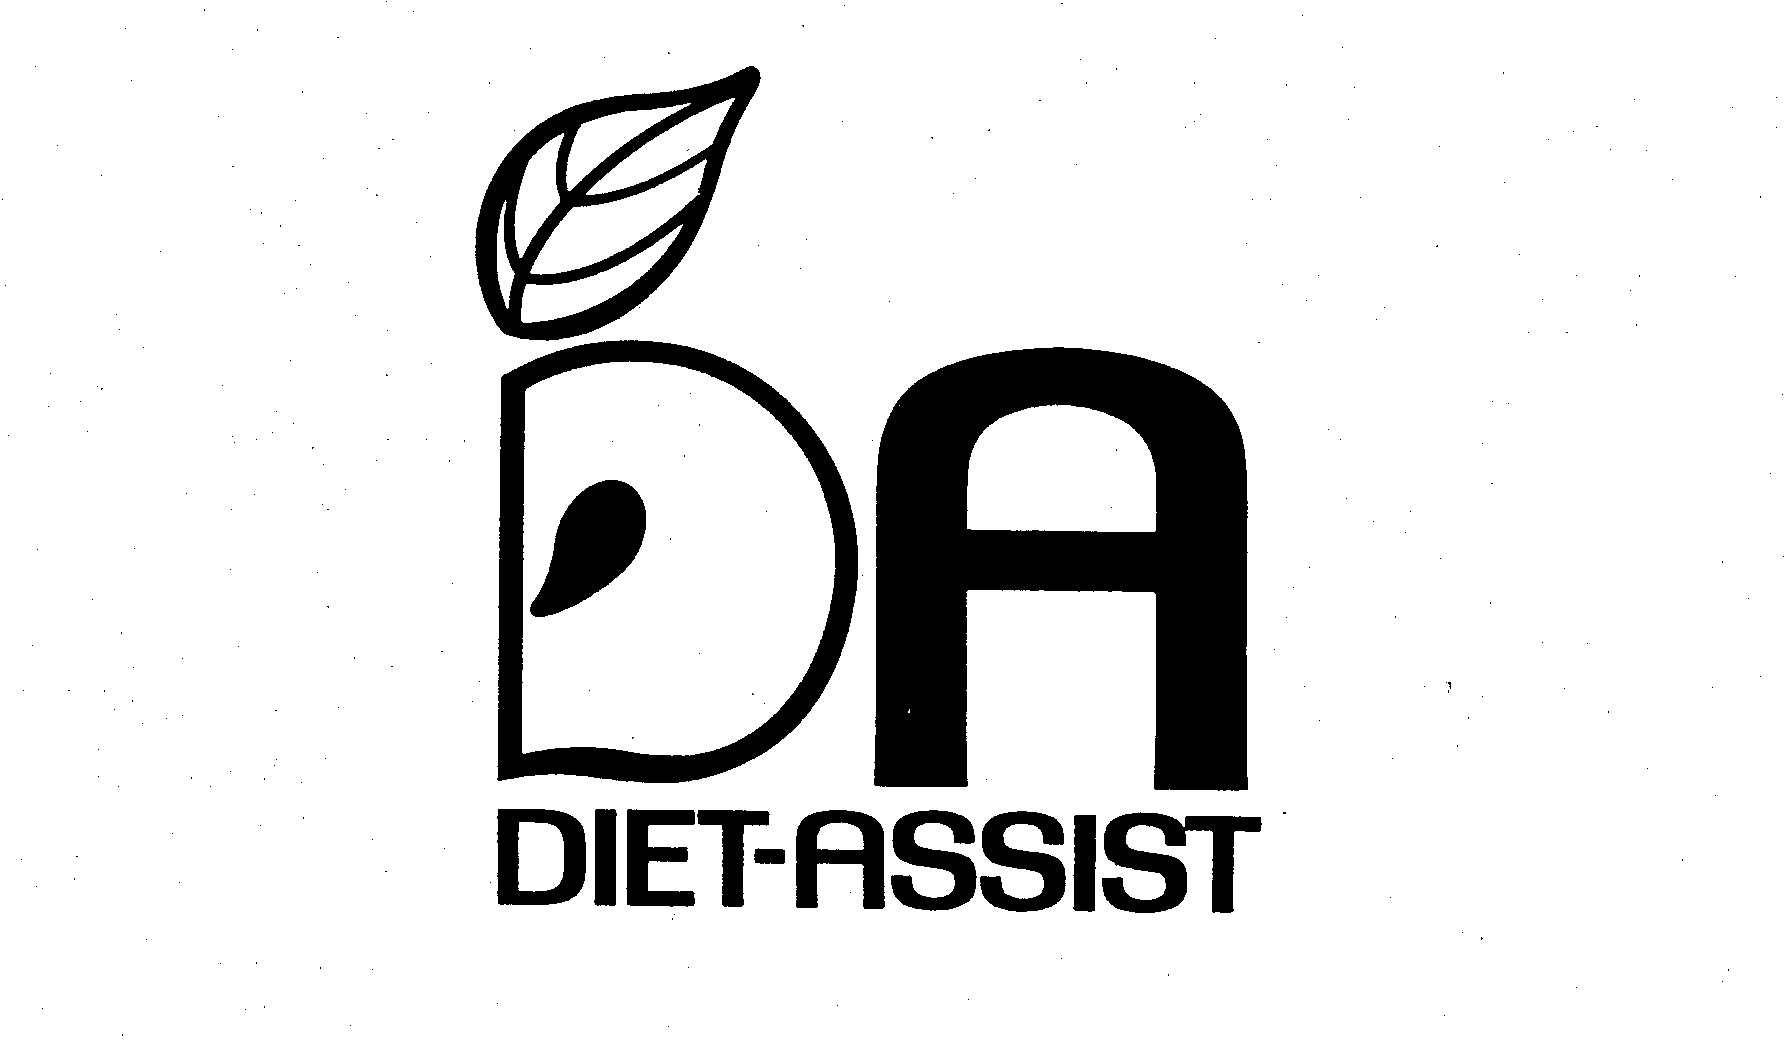  DA DIET-ASSIST